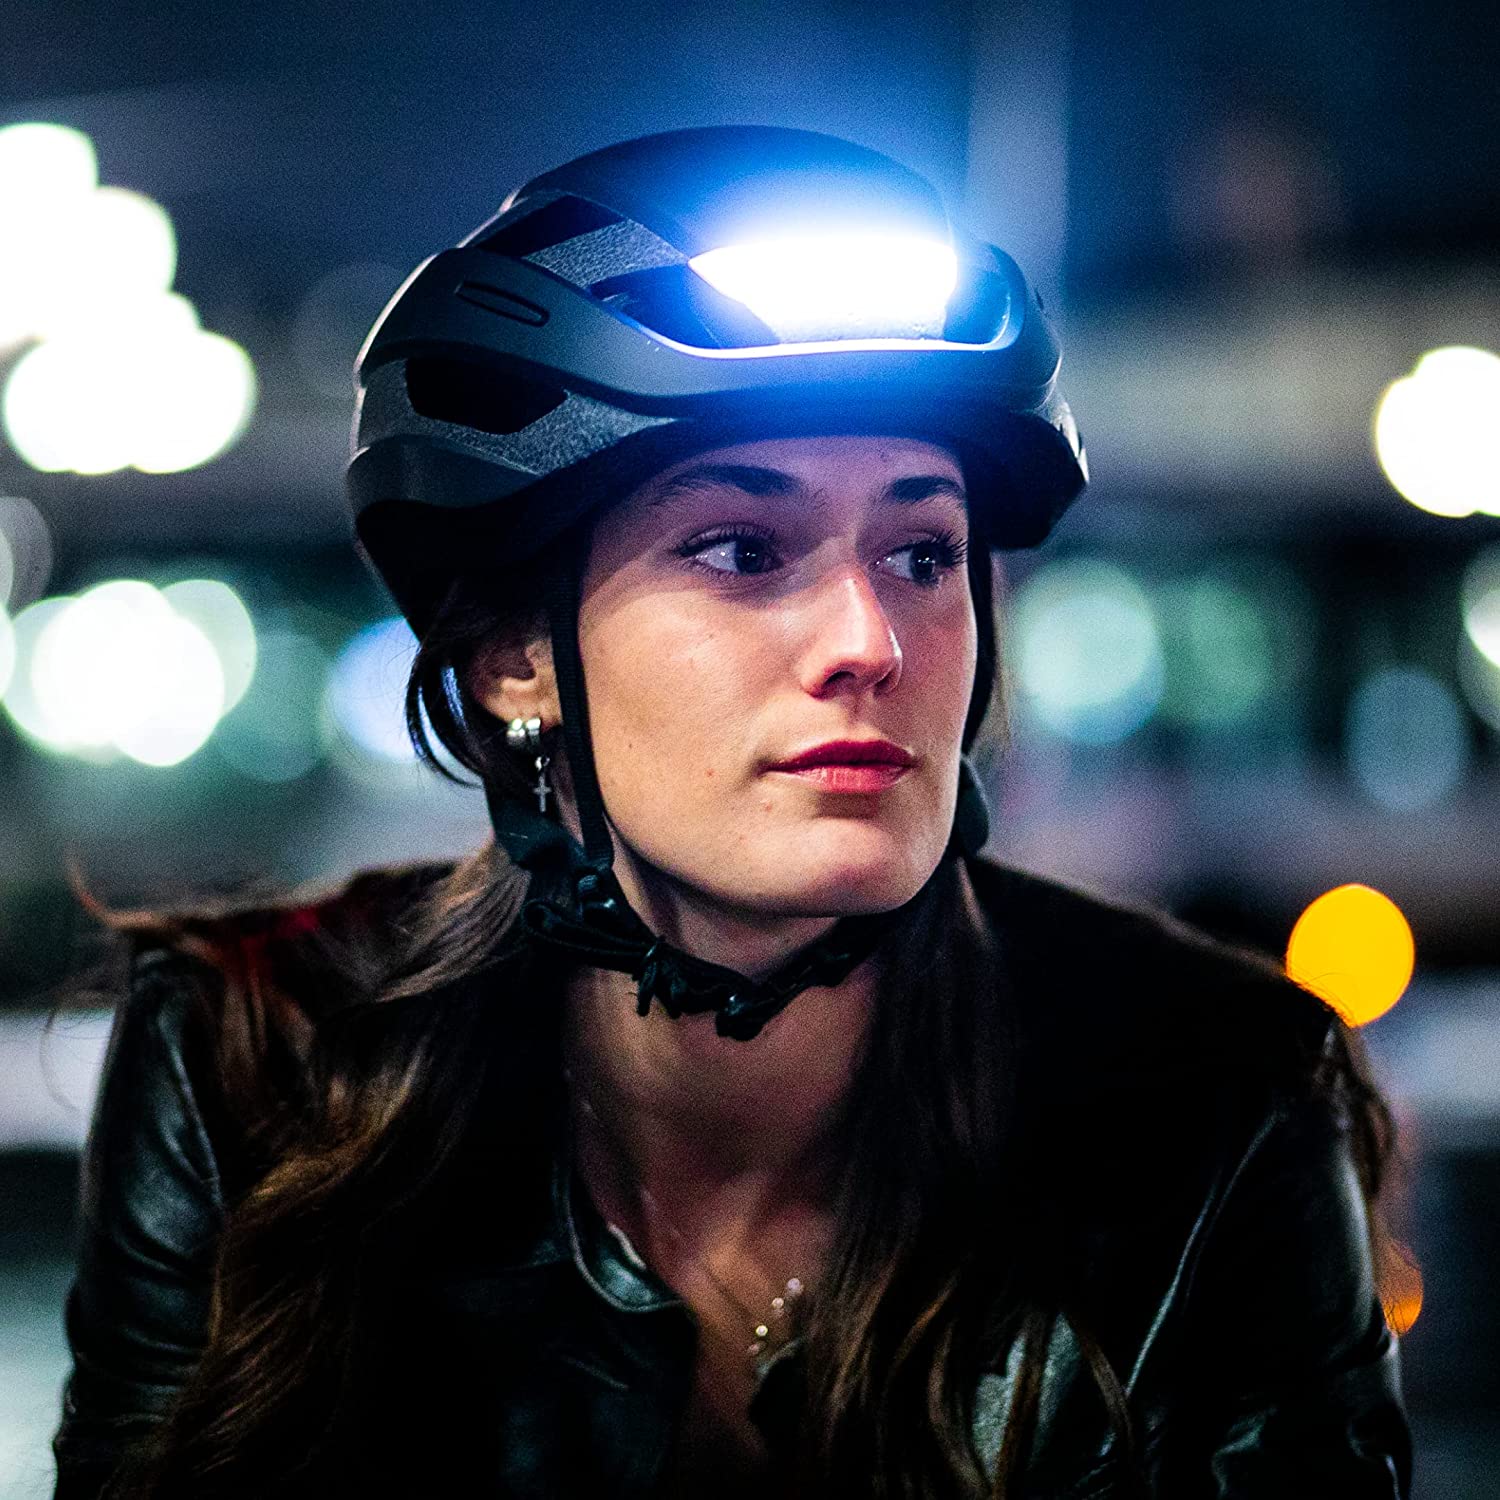 Los mejores cascos con luz para viajar seguro con tu patinete eléctrico